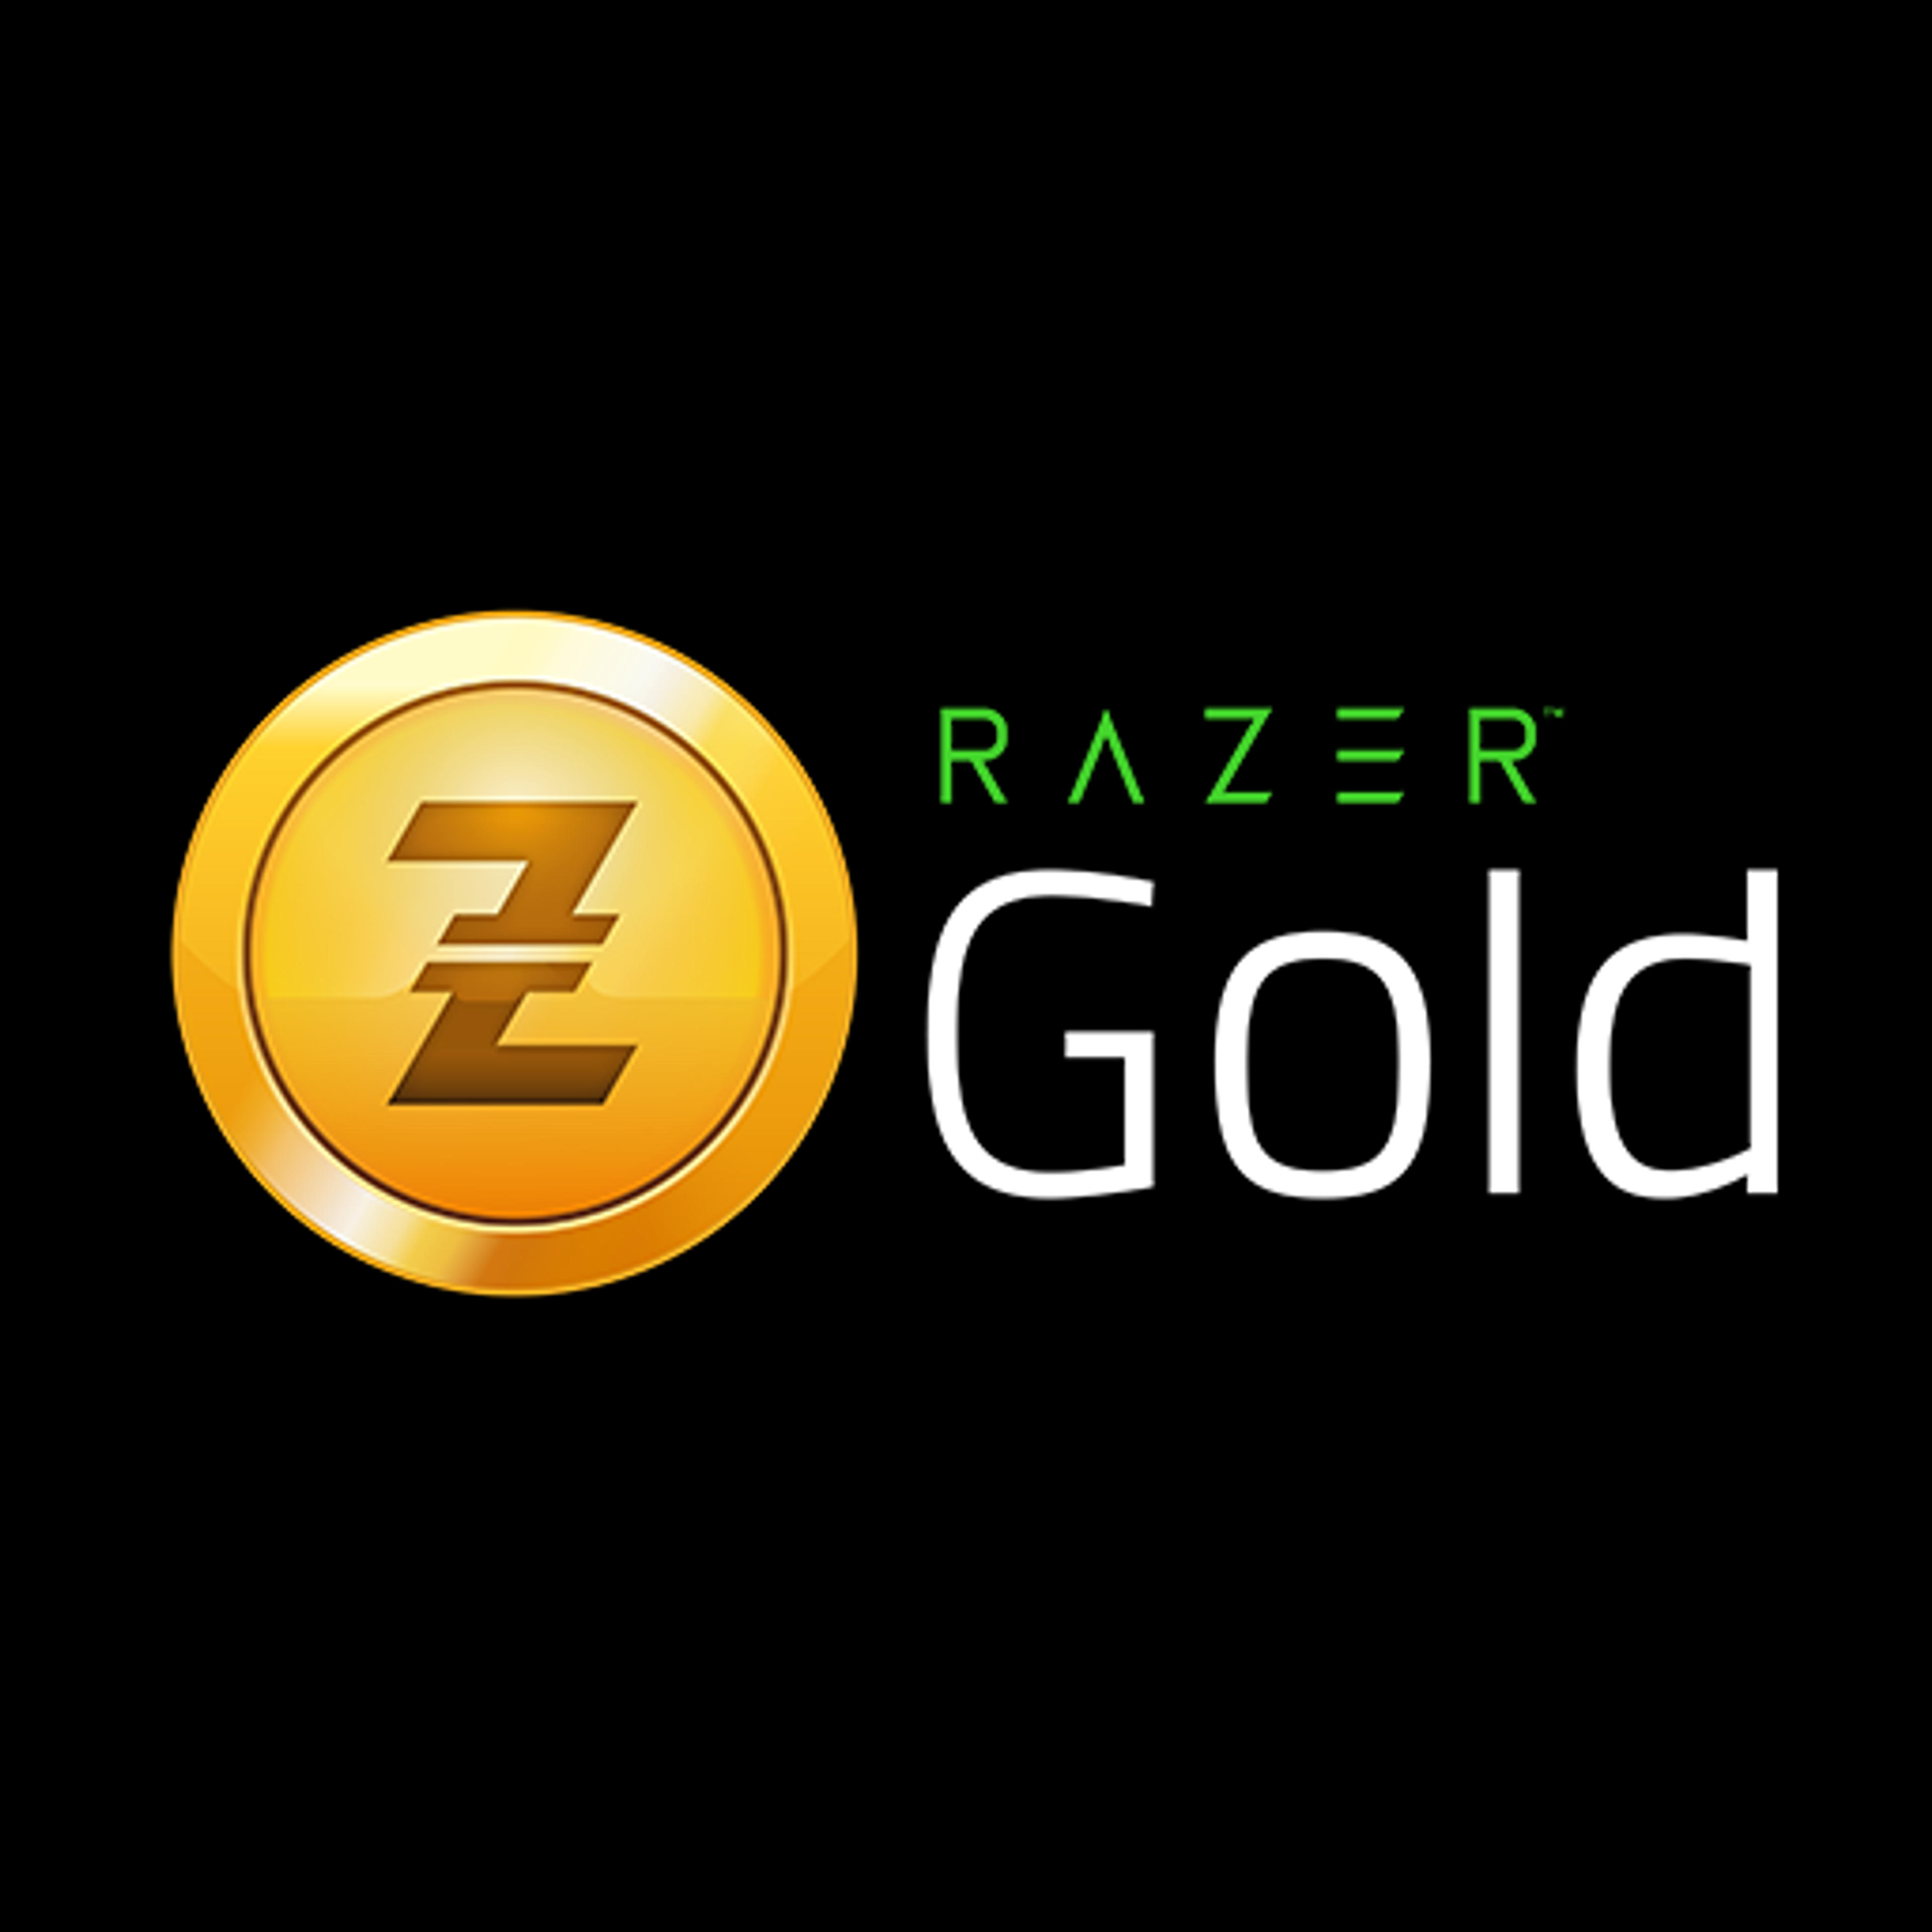 Voucher Razer Gold